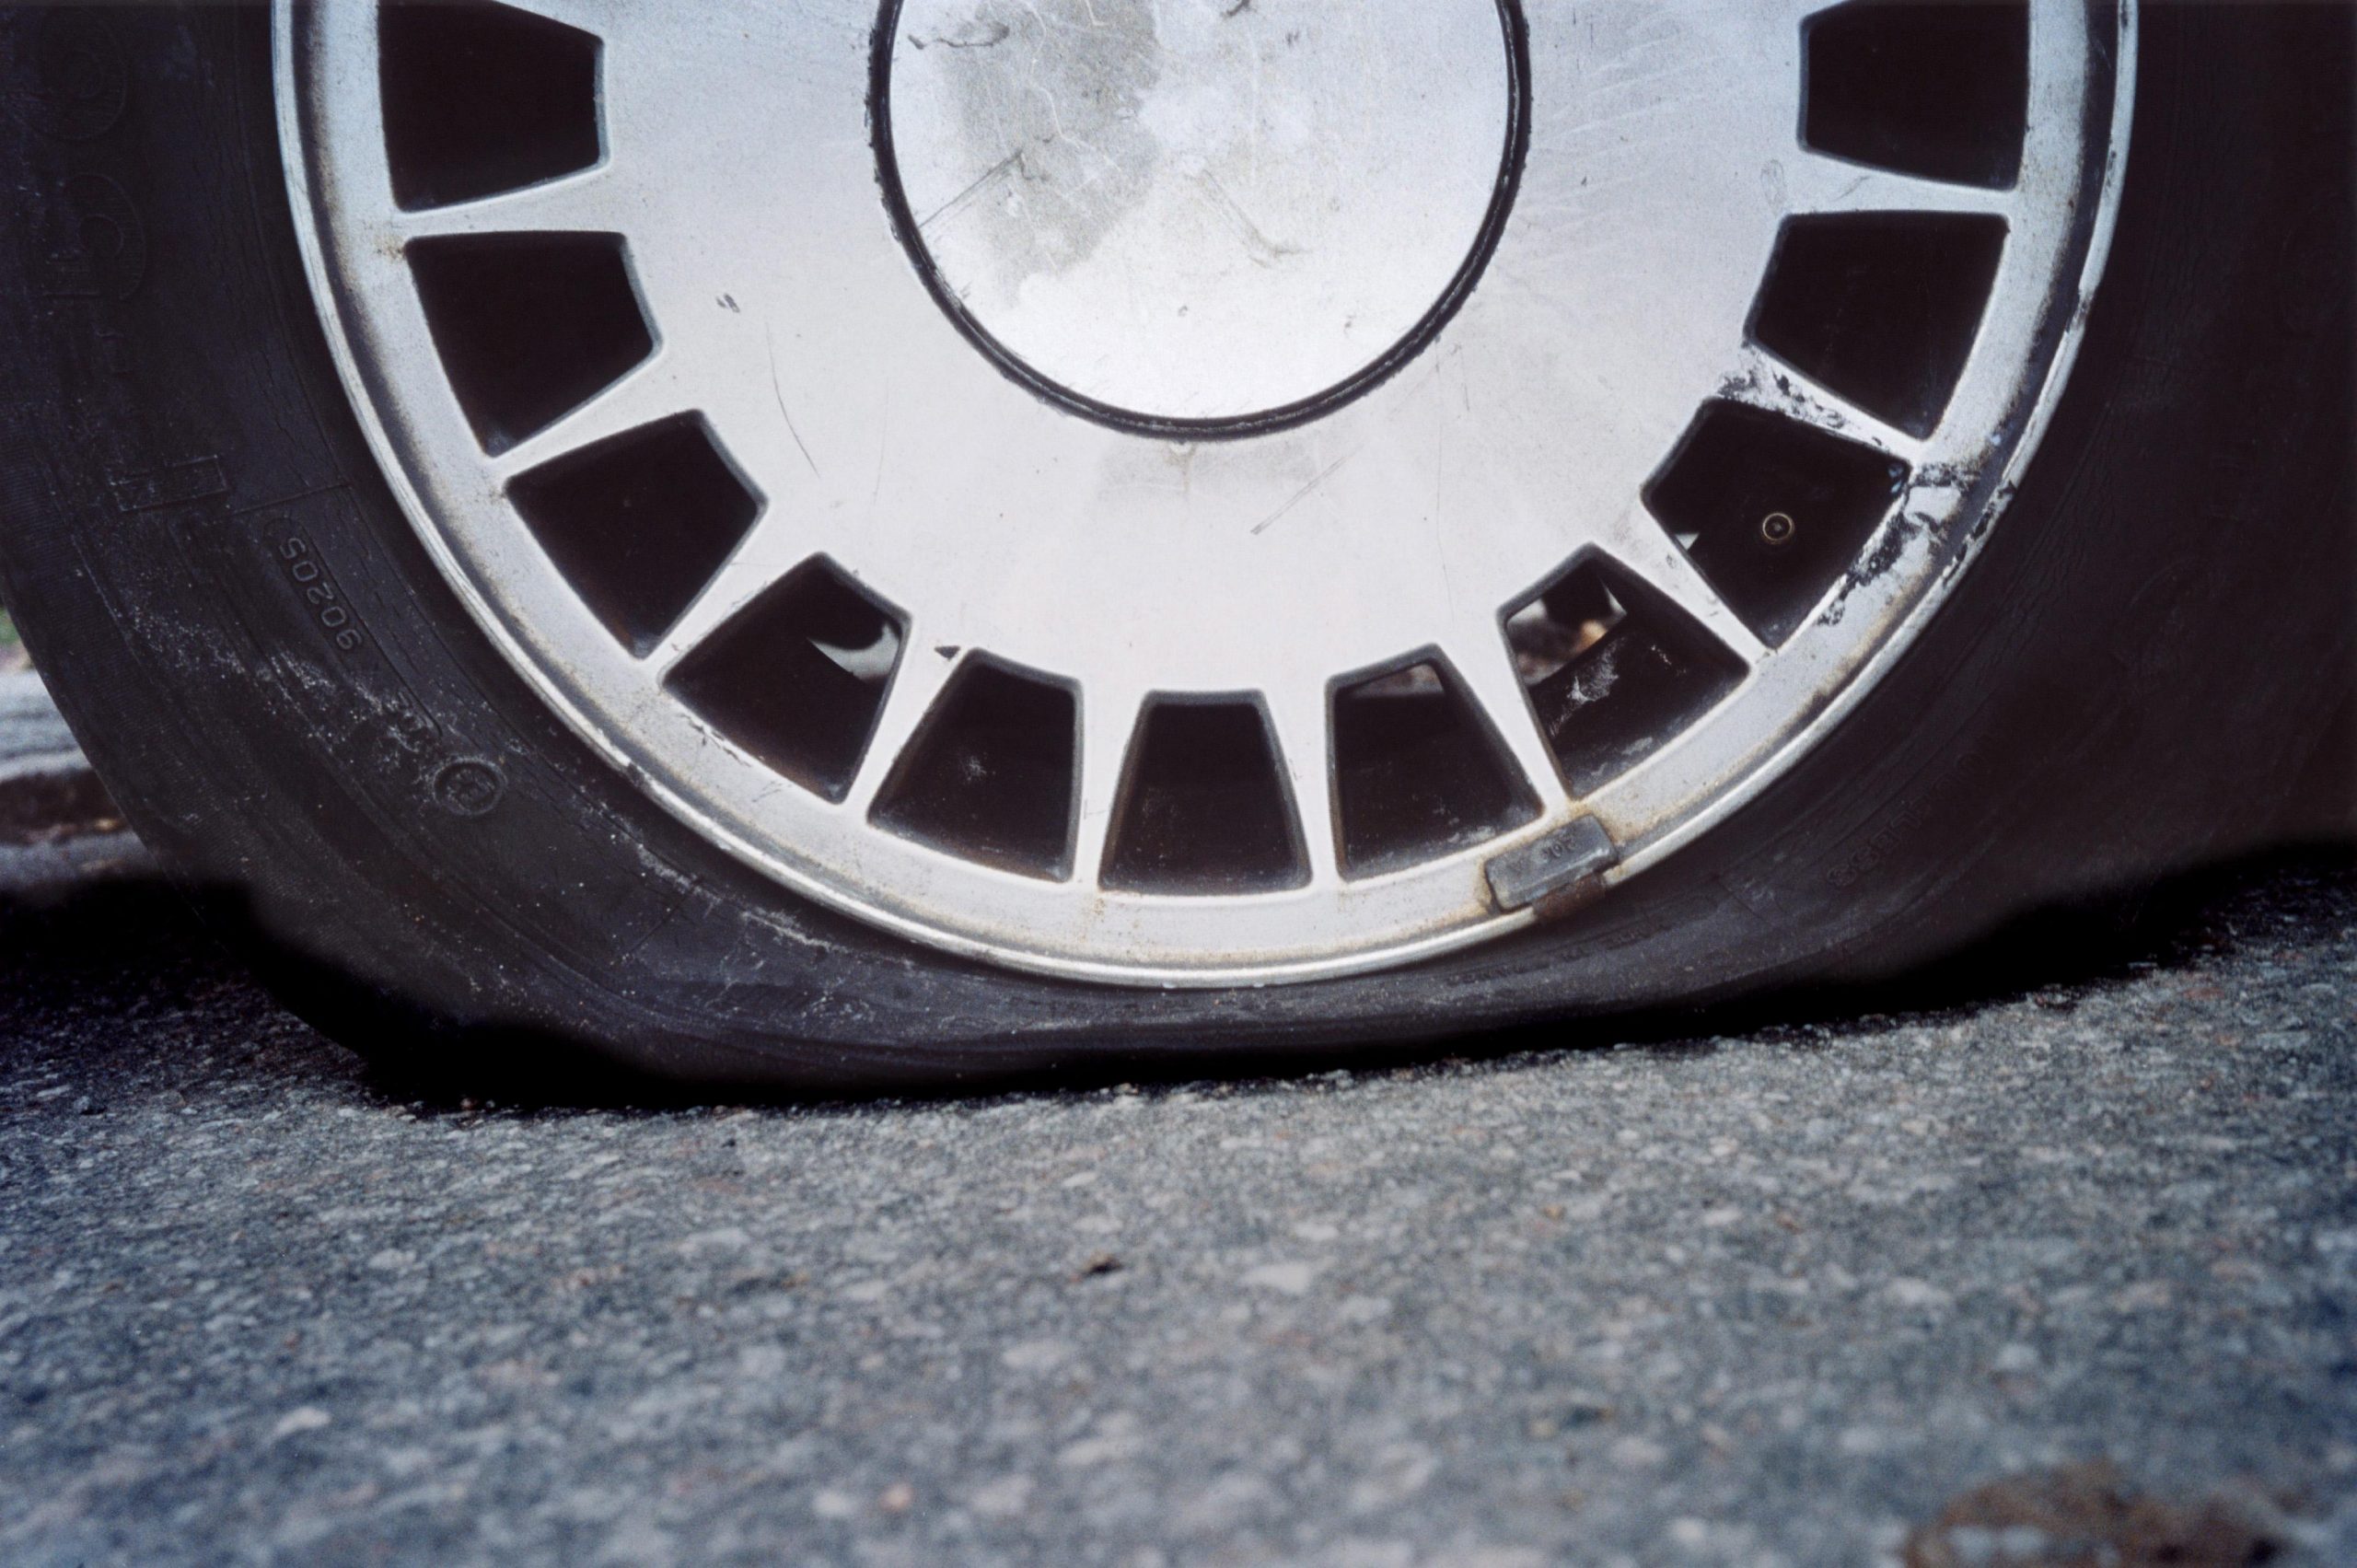 Elderly tyre slasher vandalises dozens of cars on the same Costa Blanca street in Spain